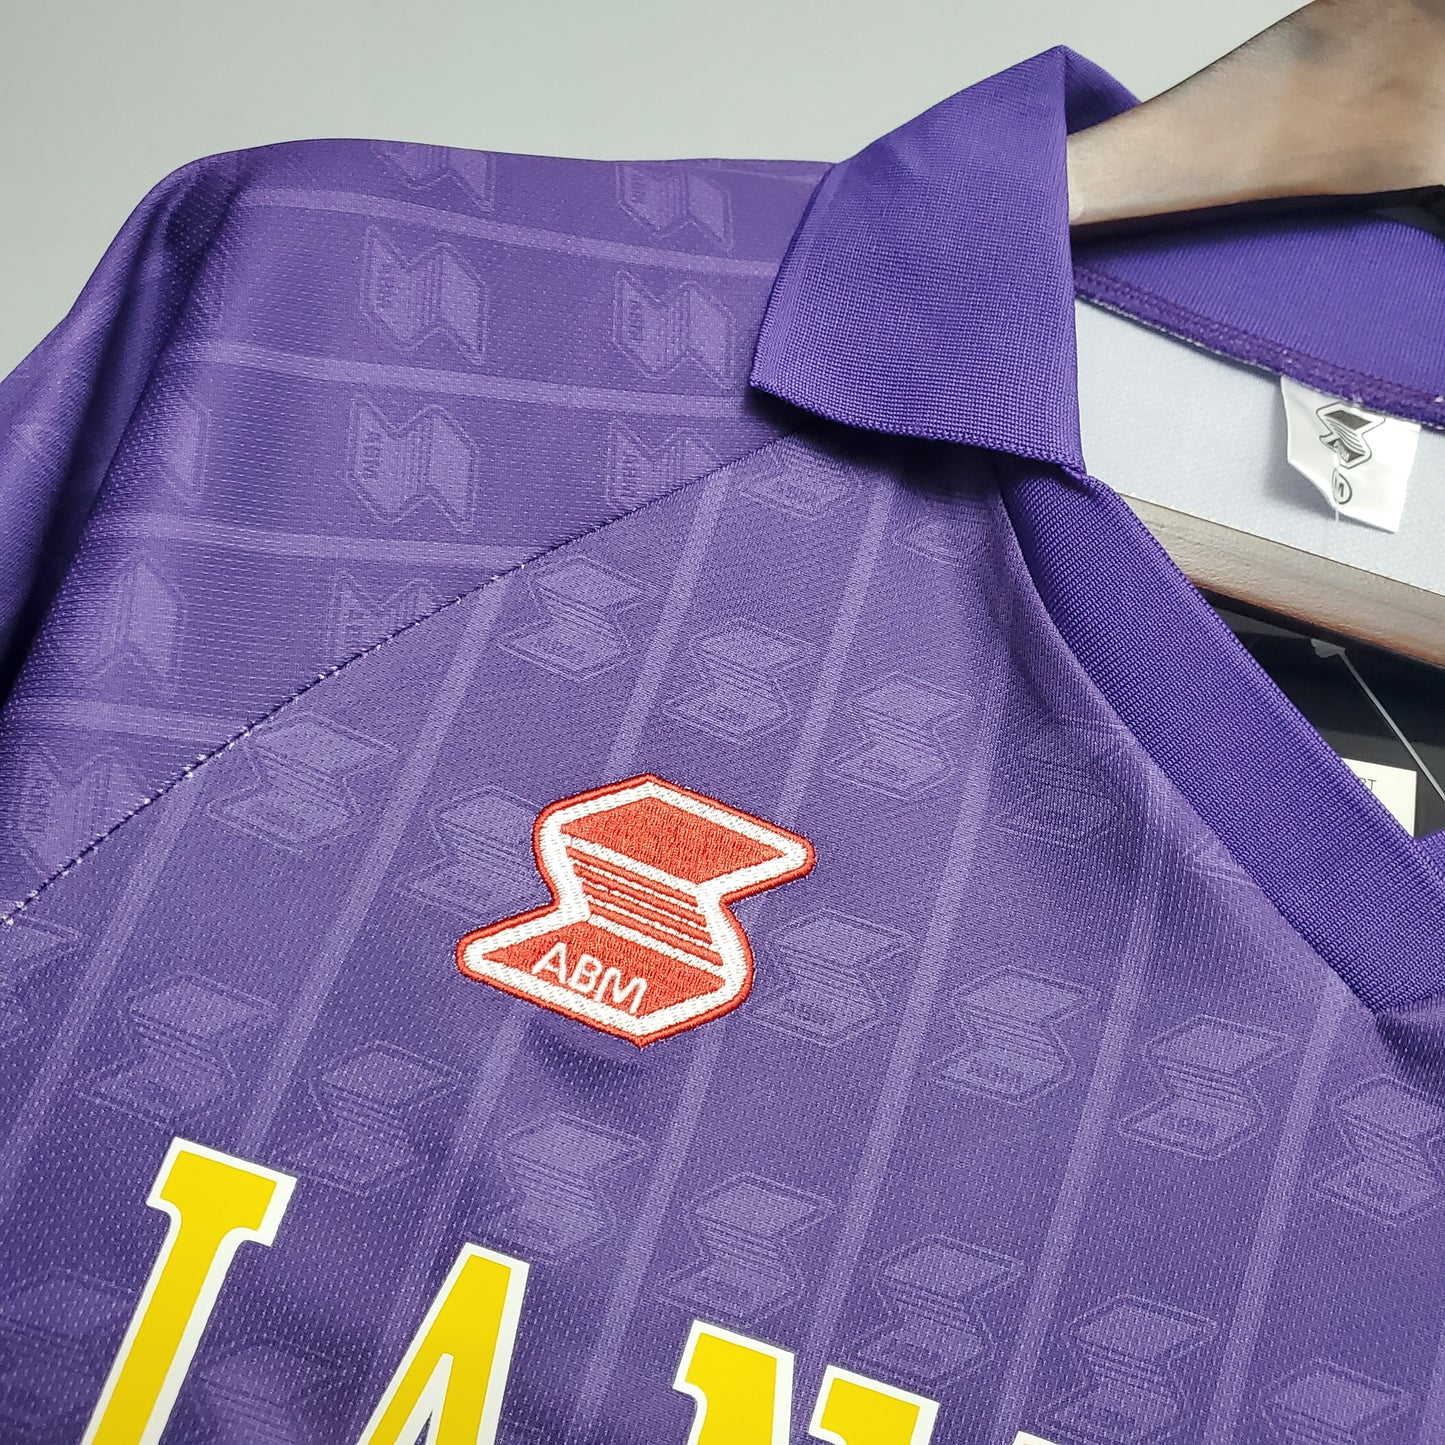 1989/90 Fiorentina Home Shirt